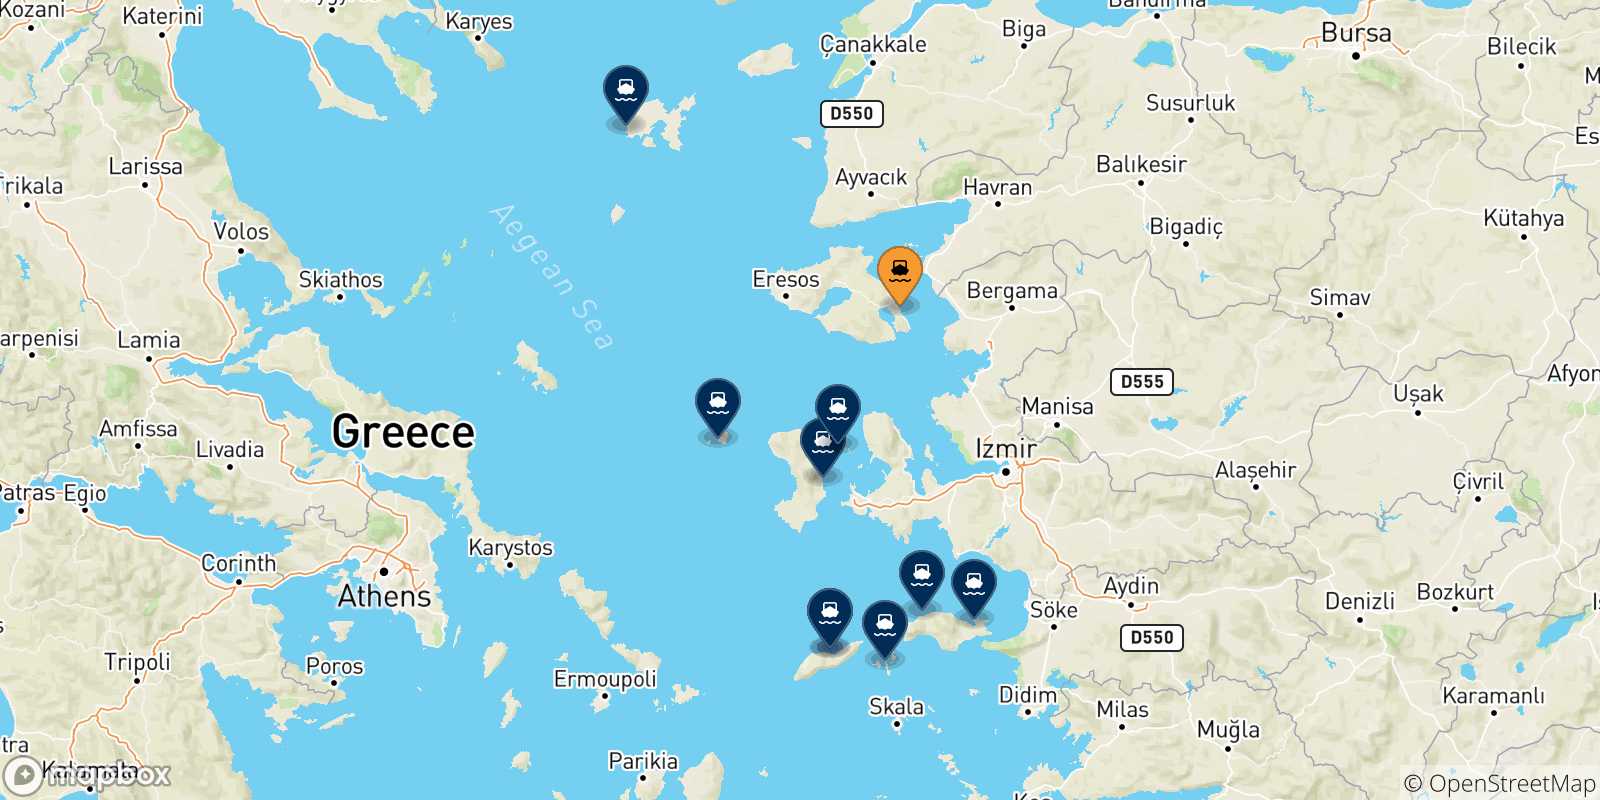 Mappa delle possibili rotte tra Mitilini (Lesvos) e le Isole Egeo Nord Orientale